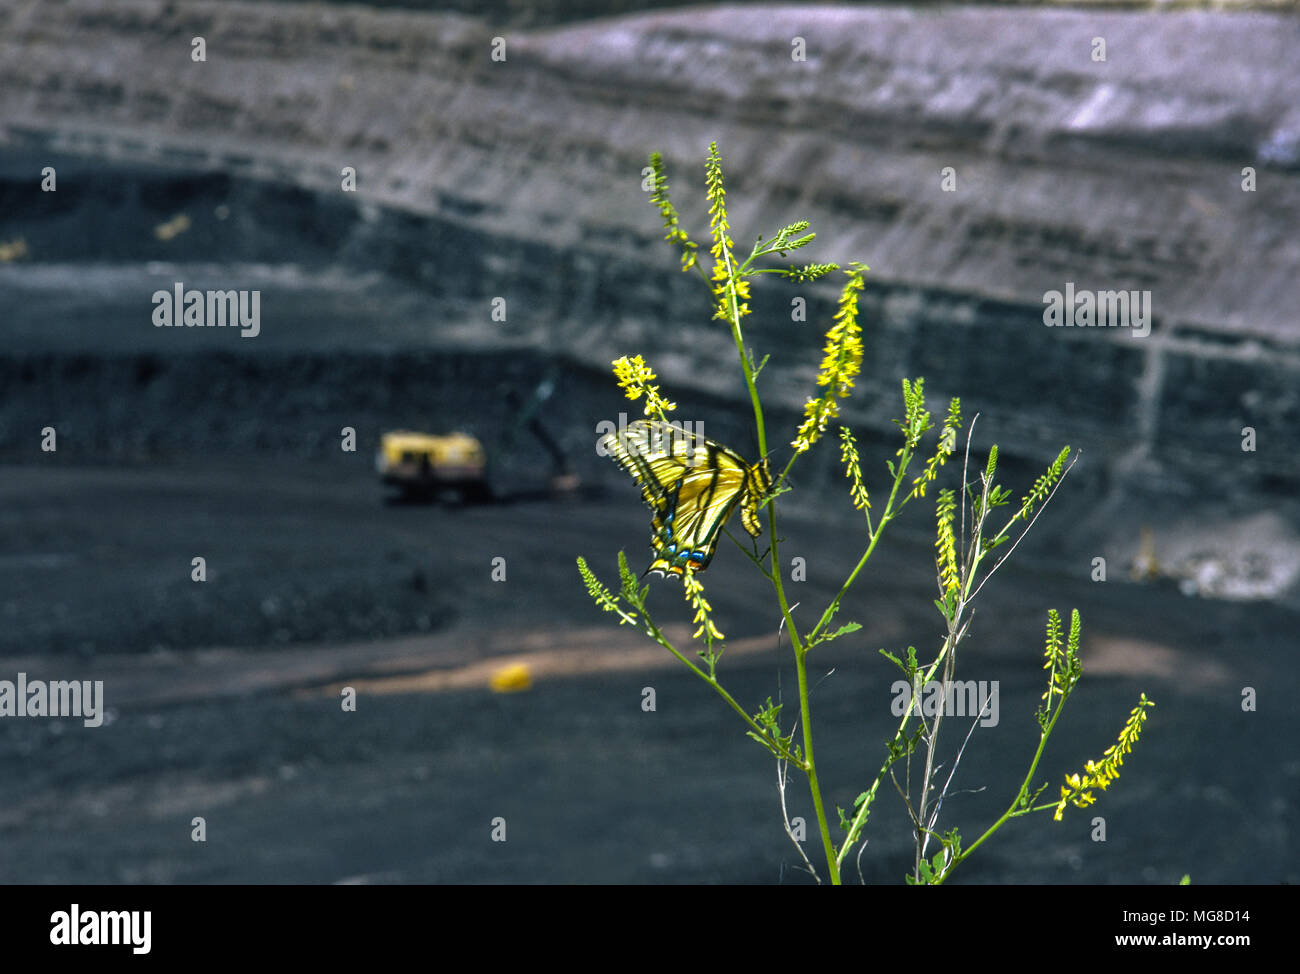 Una mariposa cuelga de una flor en el borde de una enorme mina de carbón a cielo abierto en el norte de Wyoming, símbolo de la amenaza para toda la vida que representa el combustible fósil Foto de stock